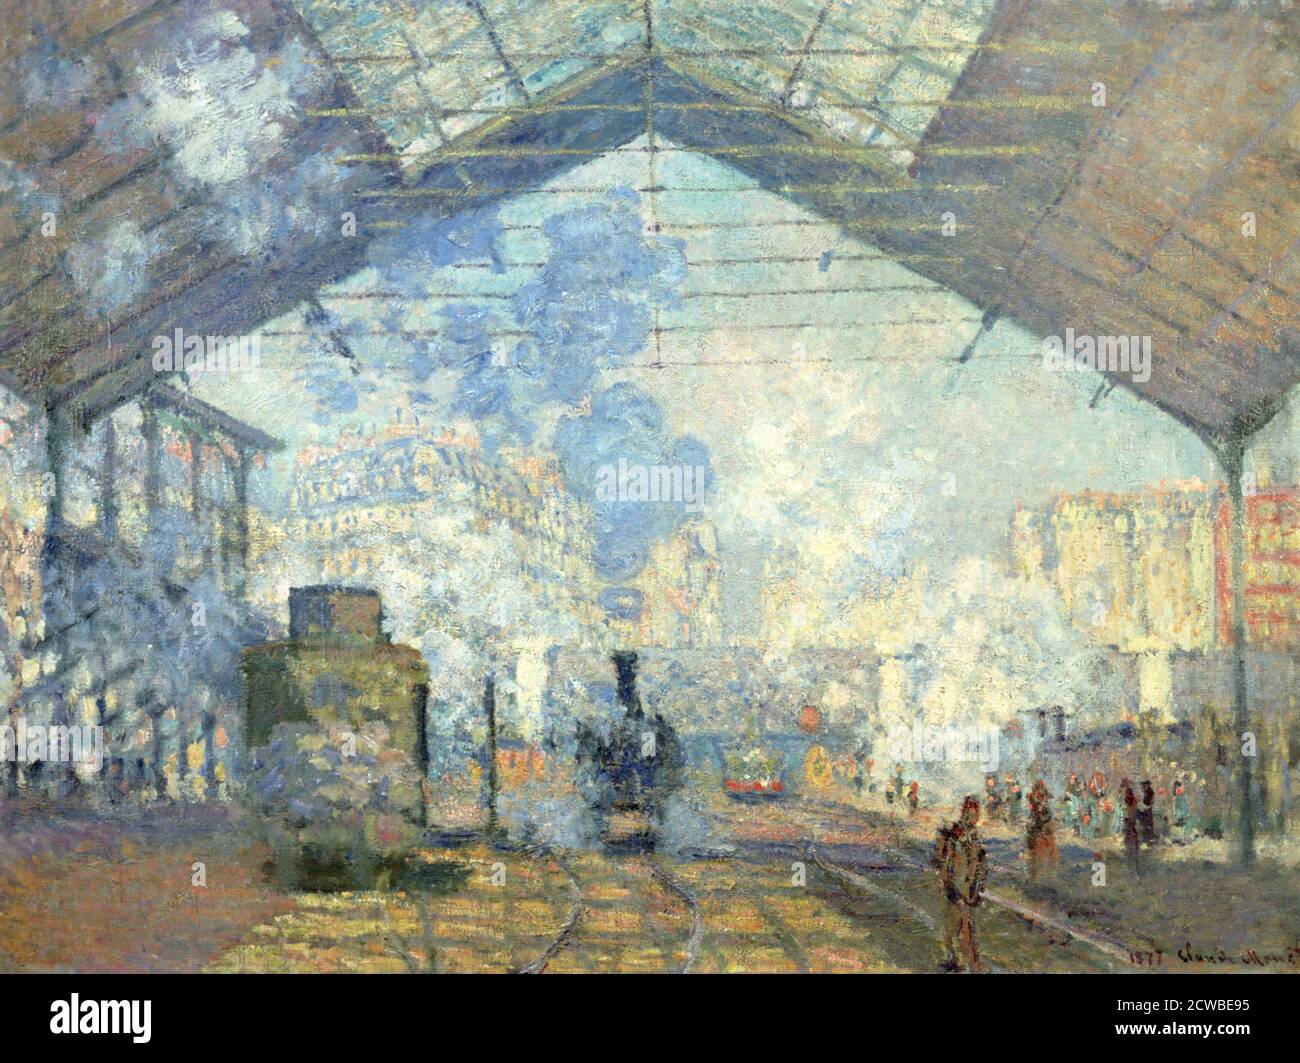 Gare Saint Lazare, Paris', 1877. Künstler: Claude Monet. Monet war ein französischer Maler, ein Begründer der französischen Impressionistenmalerei und der konsequenteste und produktivste Praktiker der Bewegungsphilosophie. Stockfoto